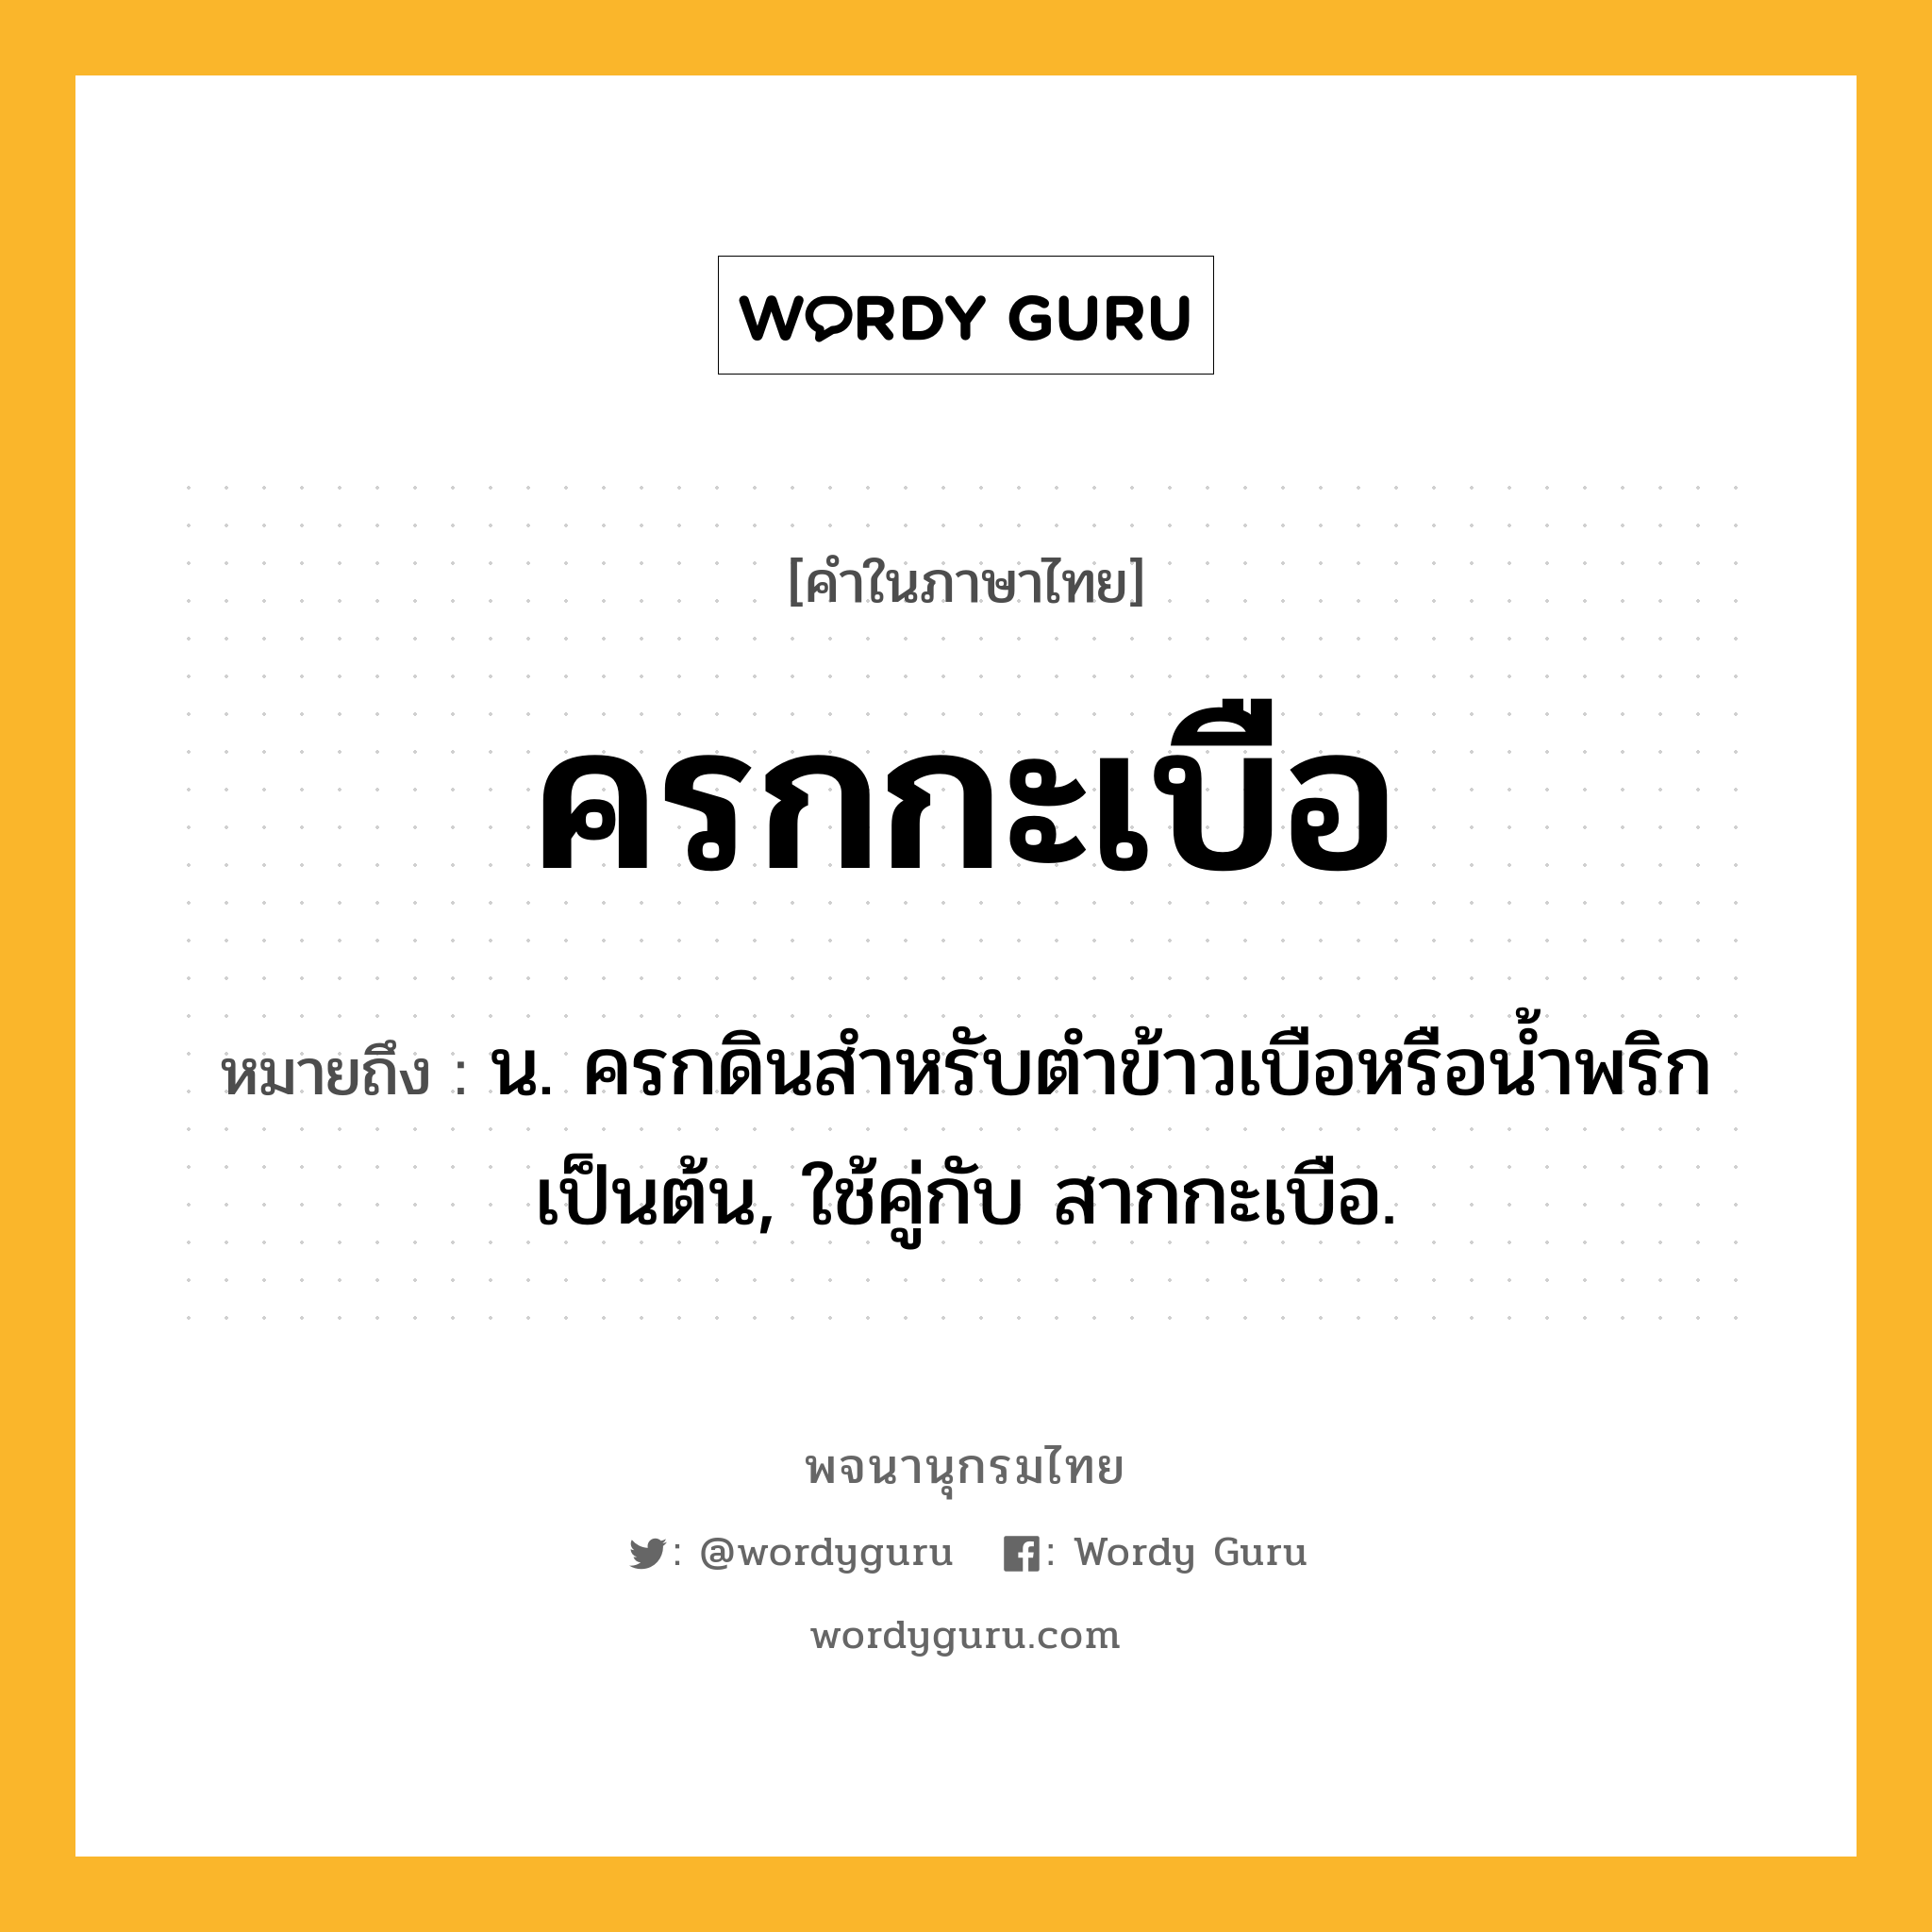 ครกกะเบือ หมายถึงอะไร?, คำในภาษาไทย ครกกะเบือ หมายถึง น. ครกดินสําหรับตําข้าวเบือหรือนํ้าพริกเป็นต้น, ใช้คู่กับ สากกะเบือ.